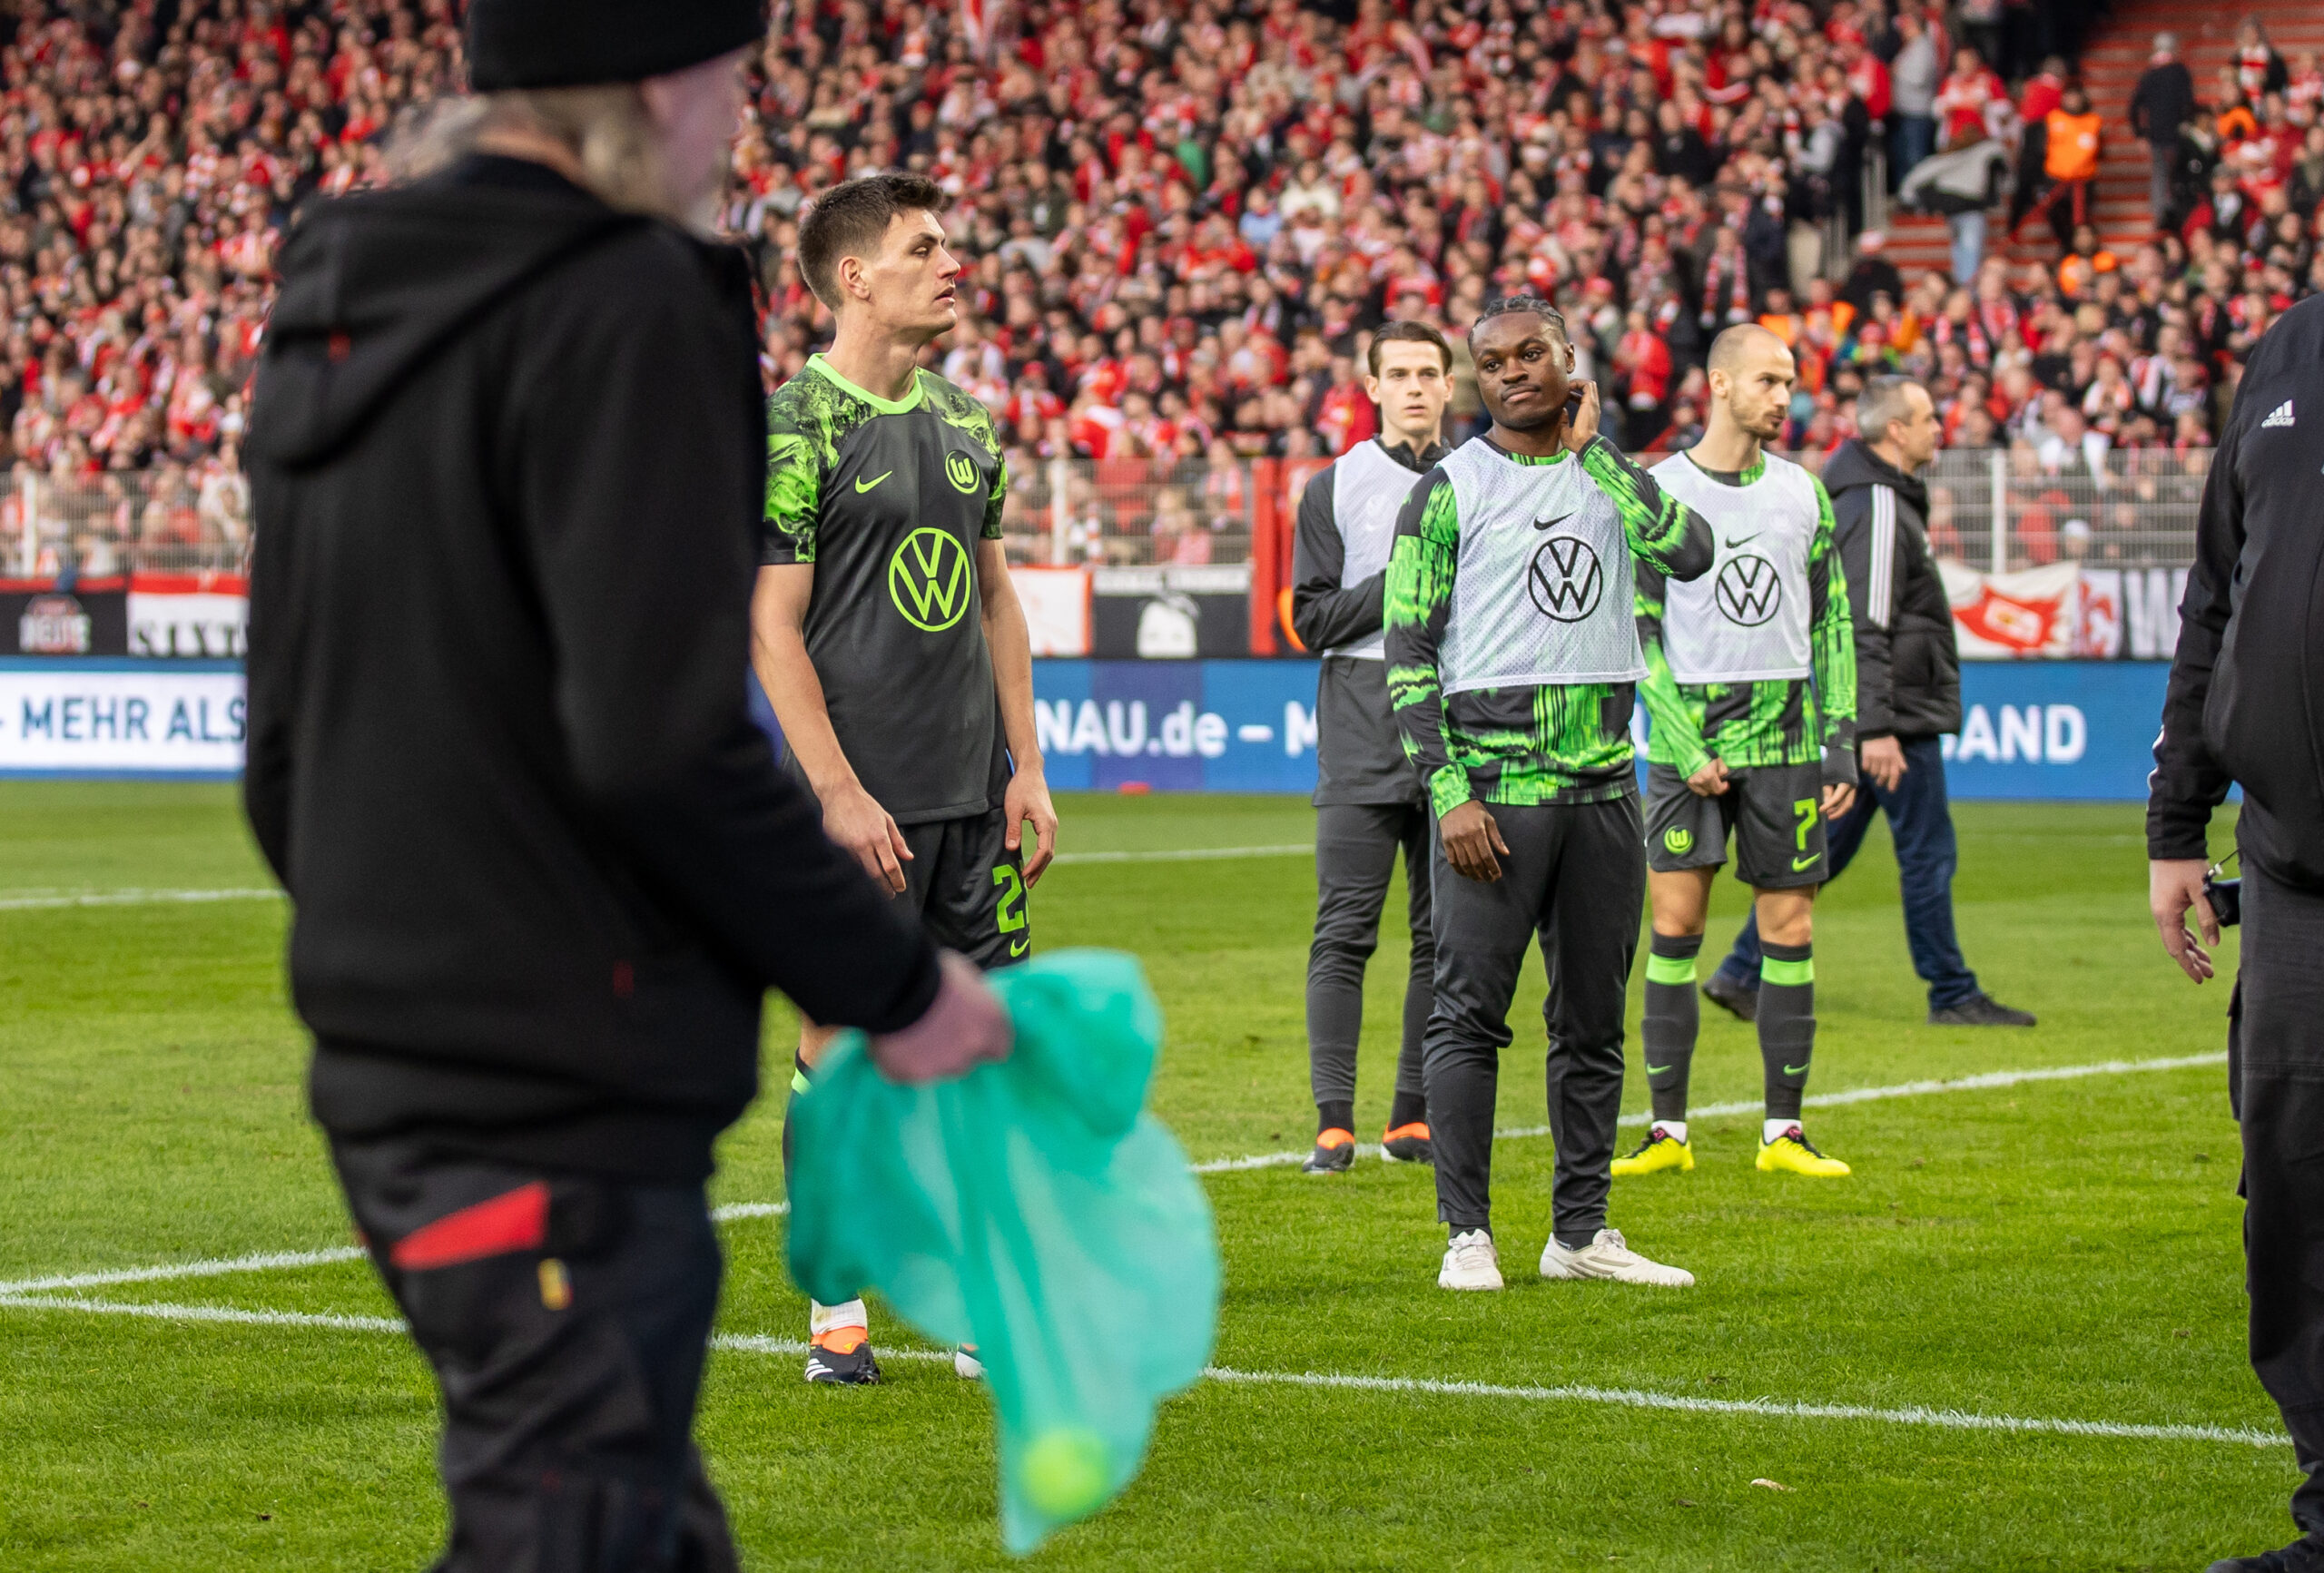 Spieler des VFL-Wolfsburg versuchen ihre Fans davon abzuhalten, Gegenstände auf das Spielfeld zu werfen.